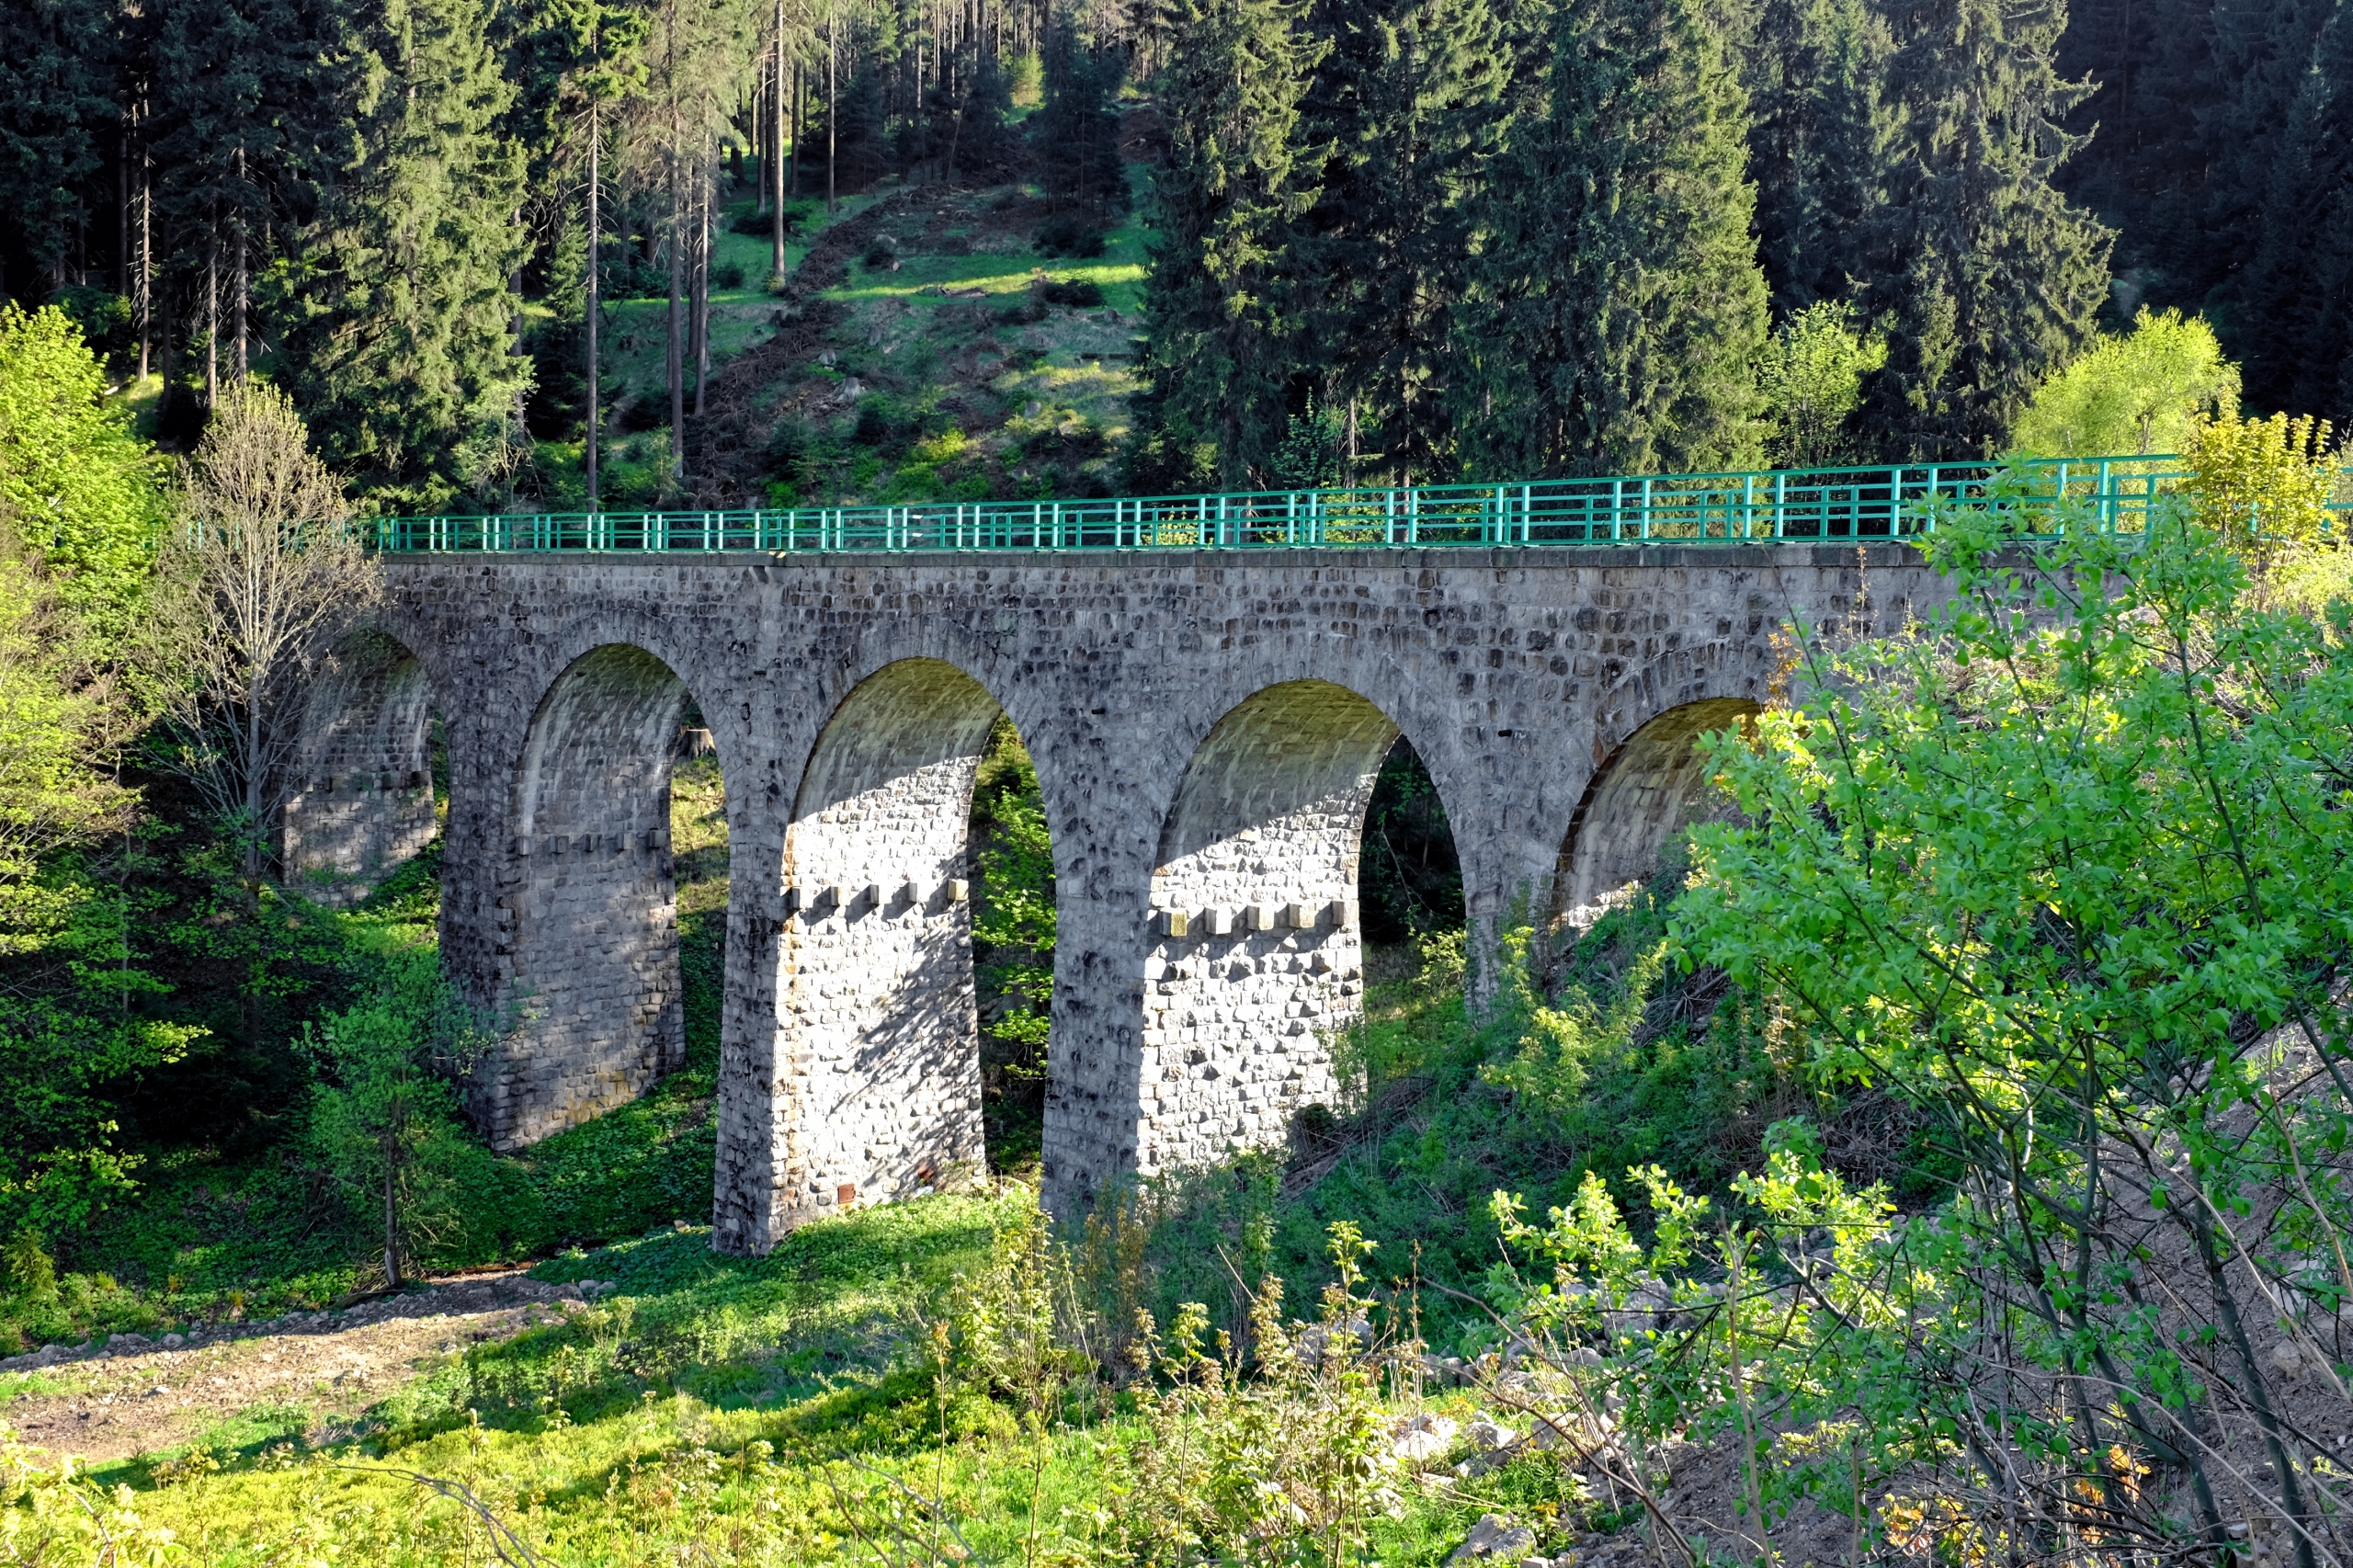 The Perninský viaduct